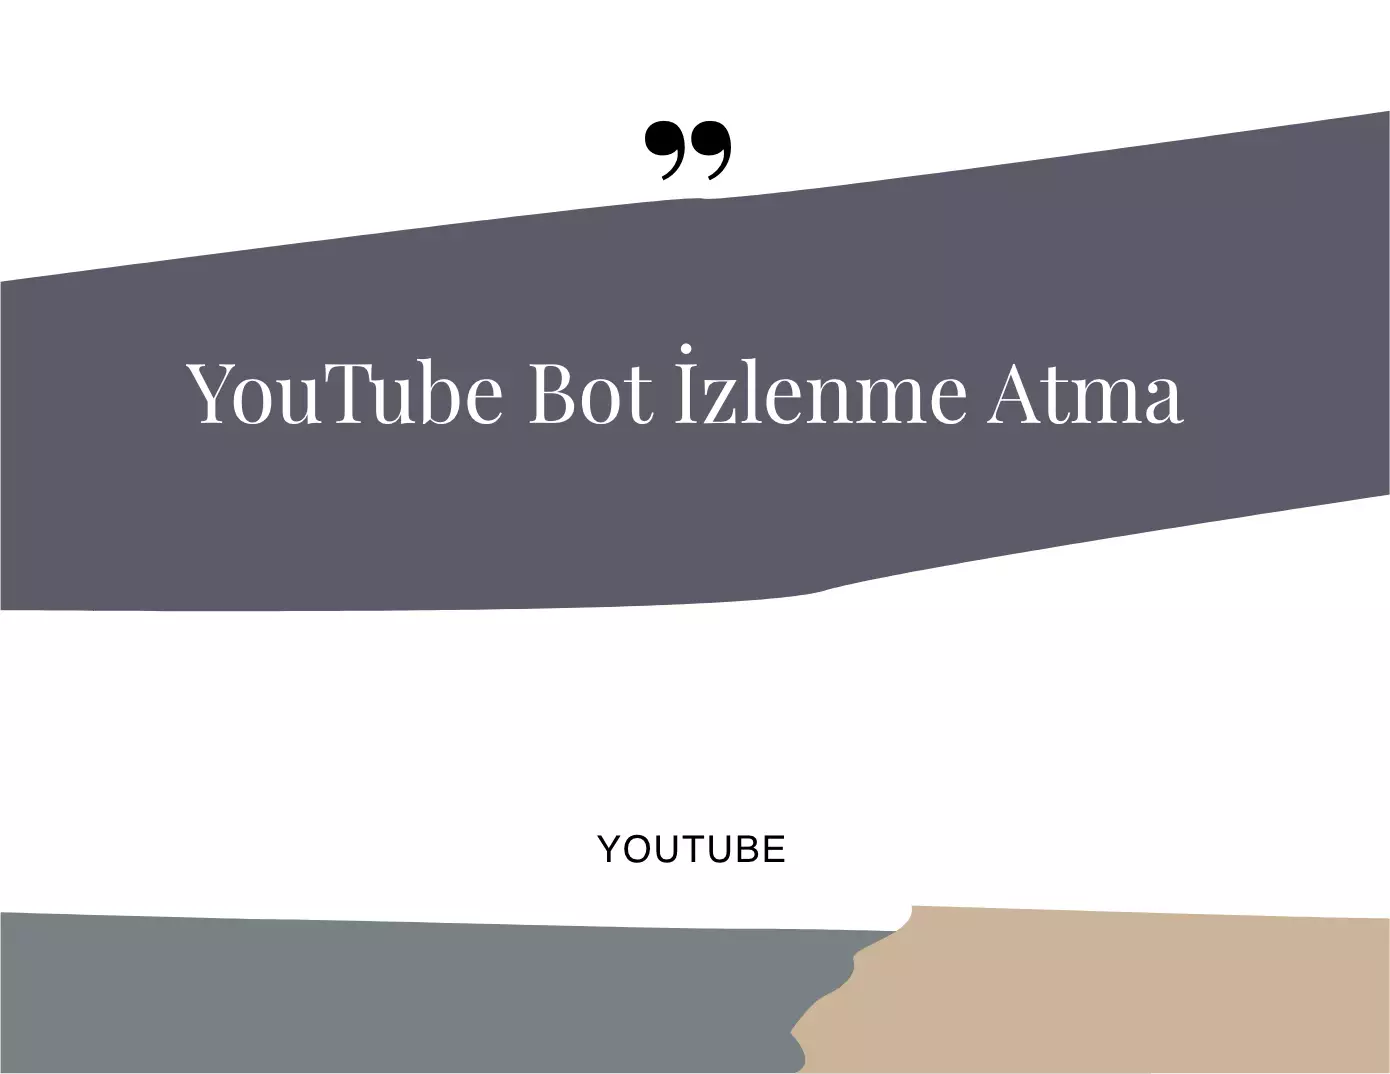 Youtube Bot İzlenme Atma